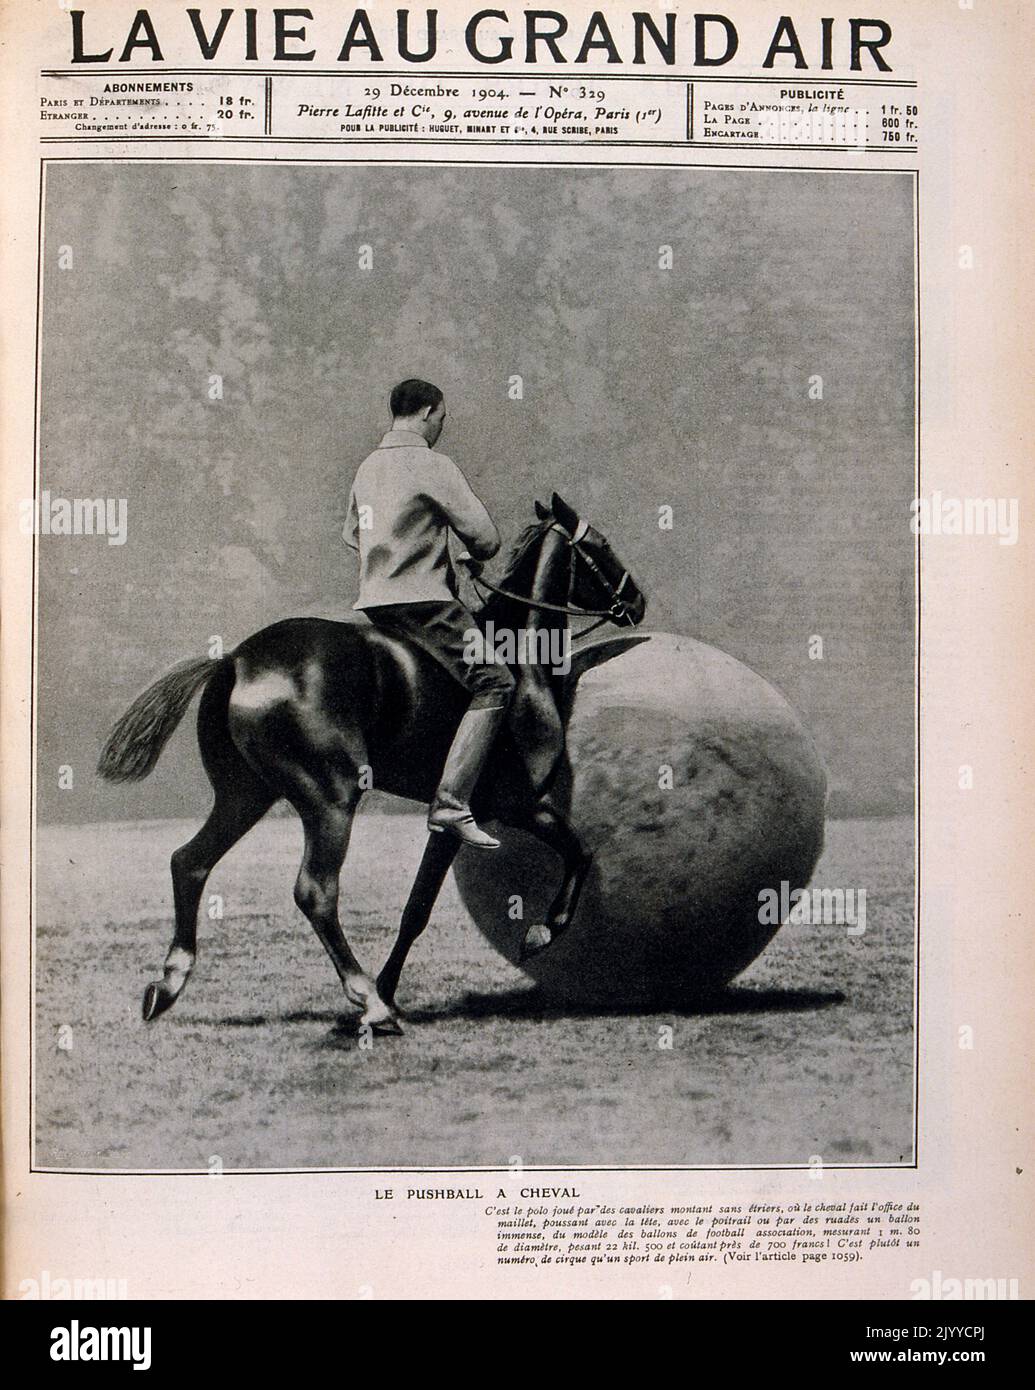 Fotografieren Sie im Inneren des Lifestyle-Magazins La Vie au Grand Air; Eine Pferdesportaktivität mit einem großen Ball, genannt Pushball. Stockfoto